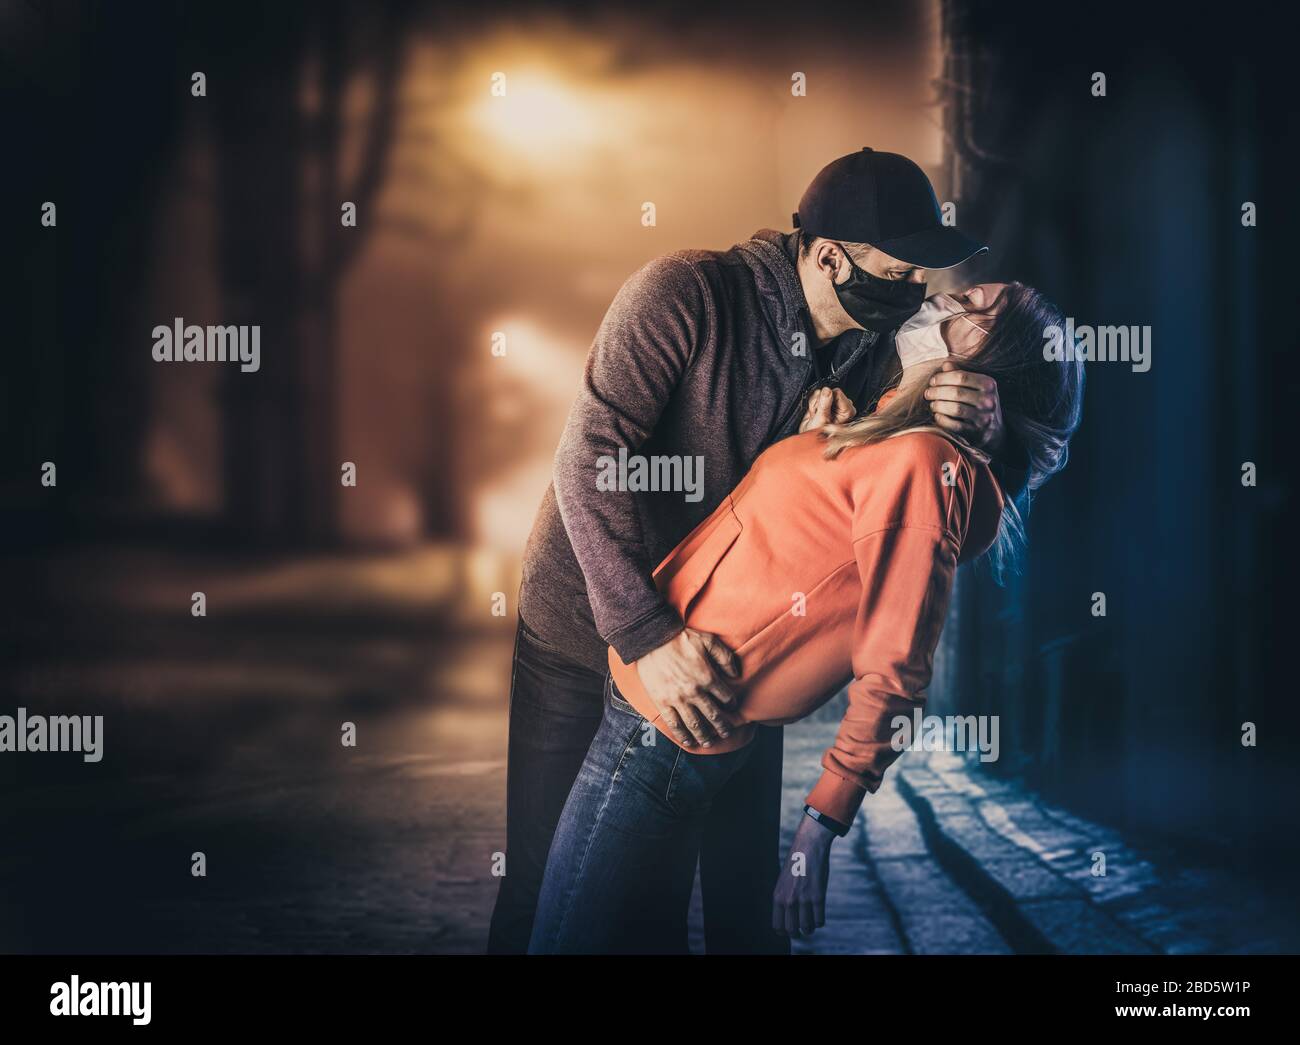 Un jeune homme adulte embrasse une femme dans des masques médicaux protecteurs dans une rue de ville la nuit. Concept de victoire et d'amour de coronavirus Banque D'Images